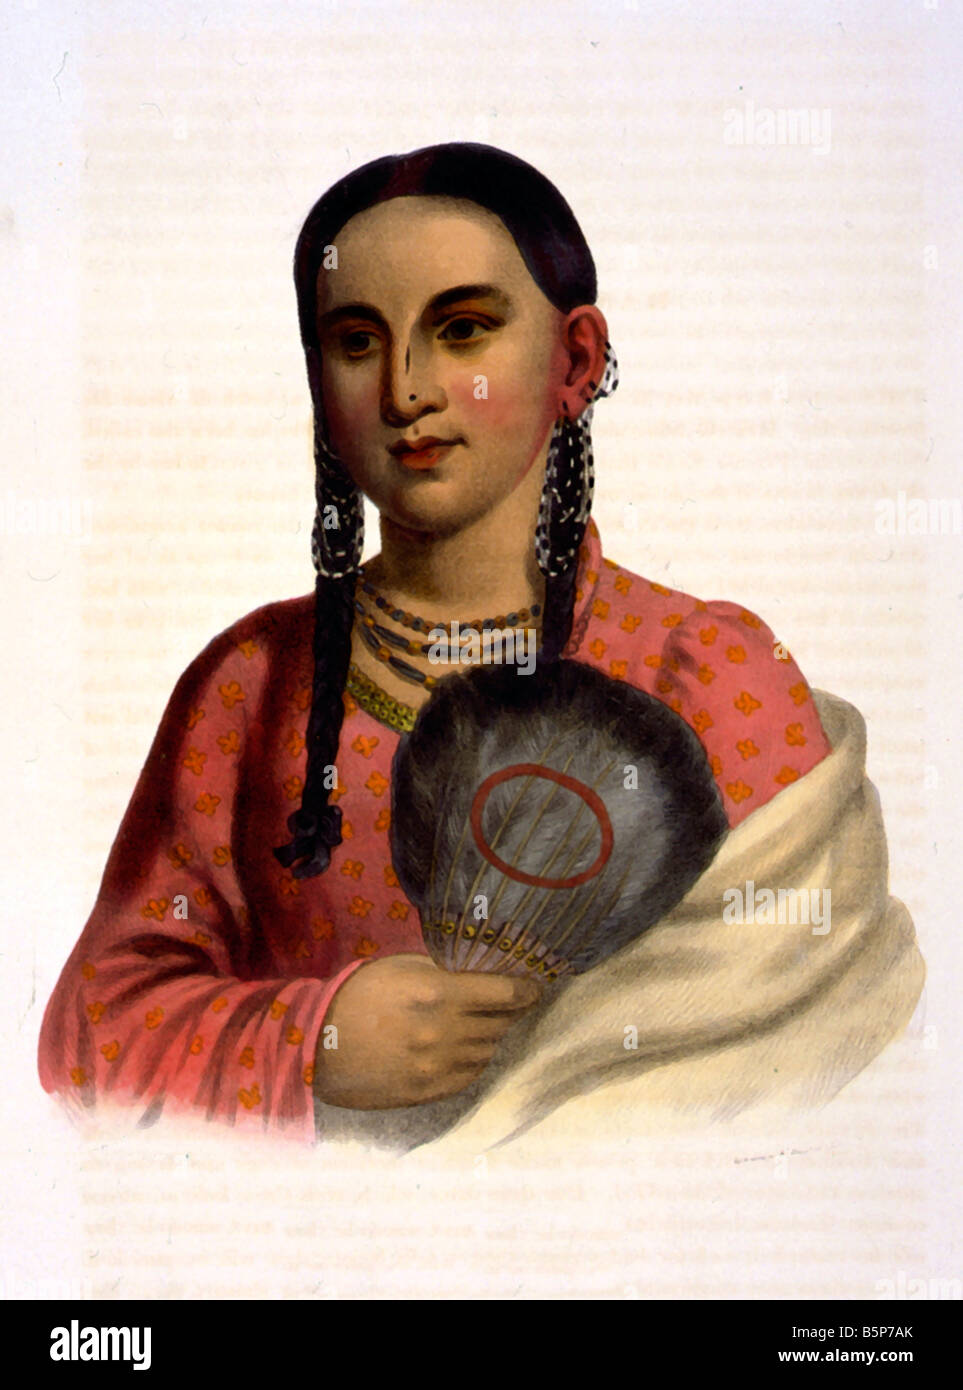 Femmina americana nativa 1890 - accuratamente restaurato, re-master riparato e colori enhanced al suo stato originale. Foto Stock